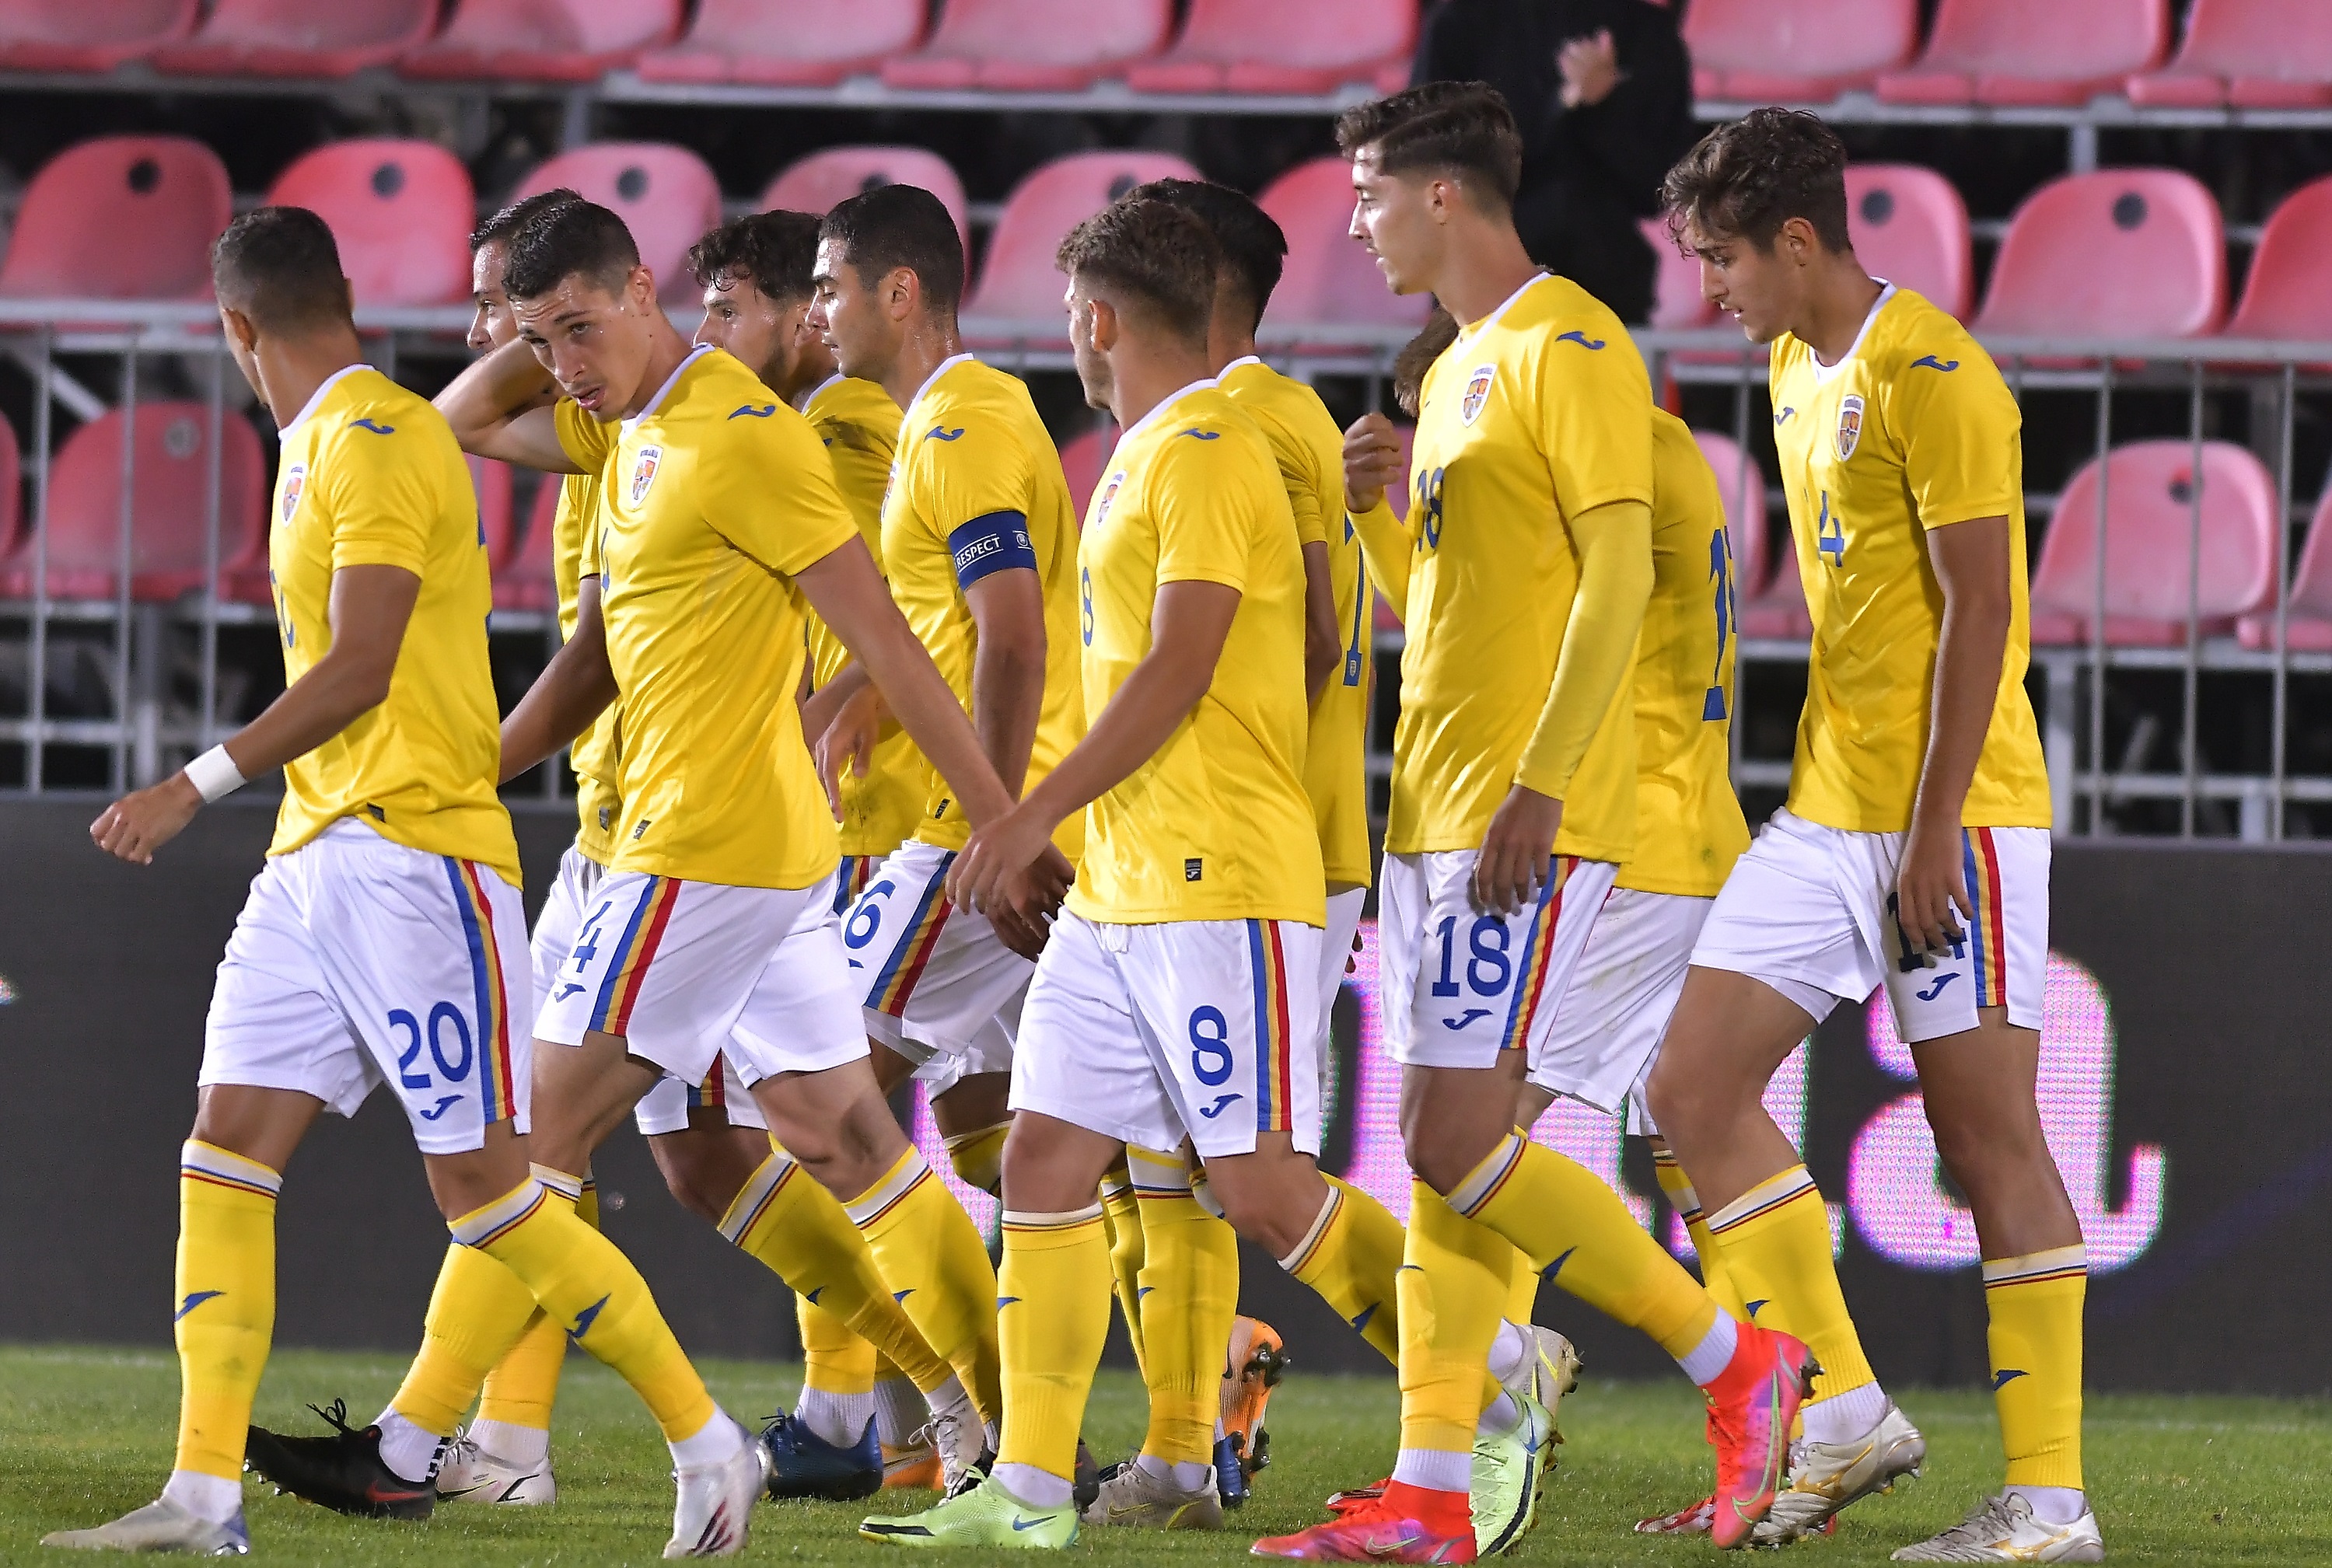 Maroc U21 – România U21 0-0, ACUM, pe digisport.ro. Continuă pregătirea pentru EURO 2023